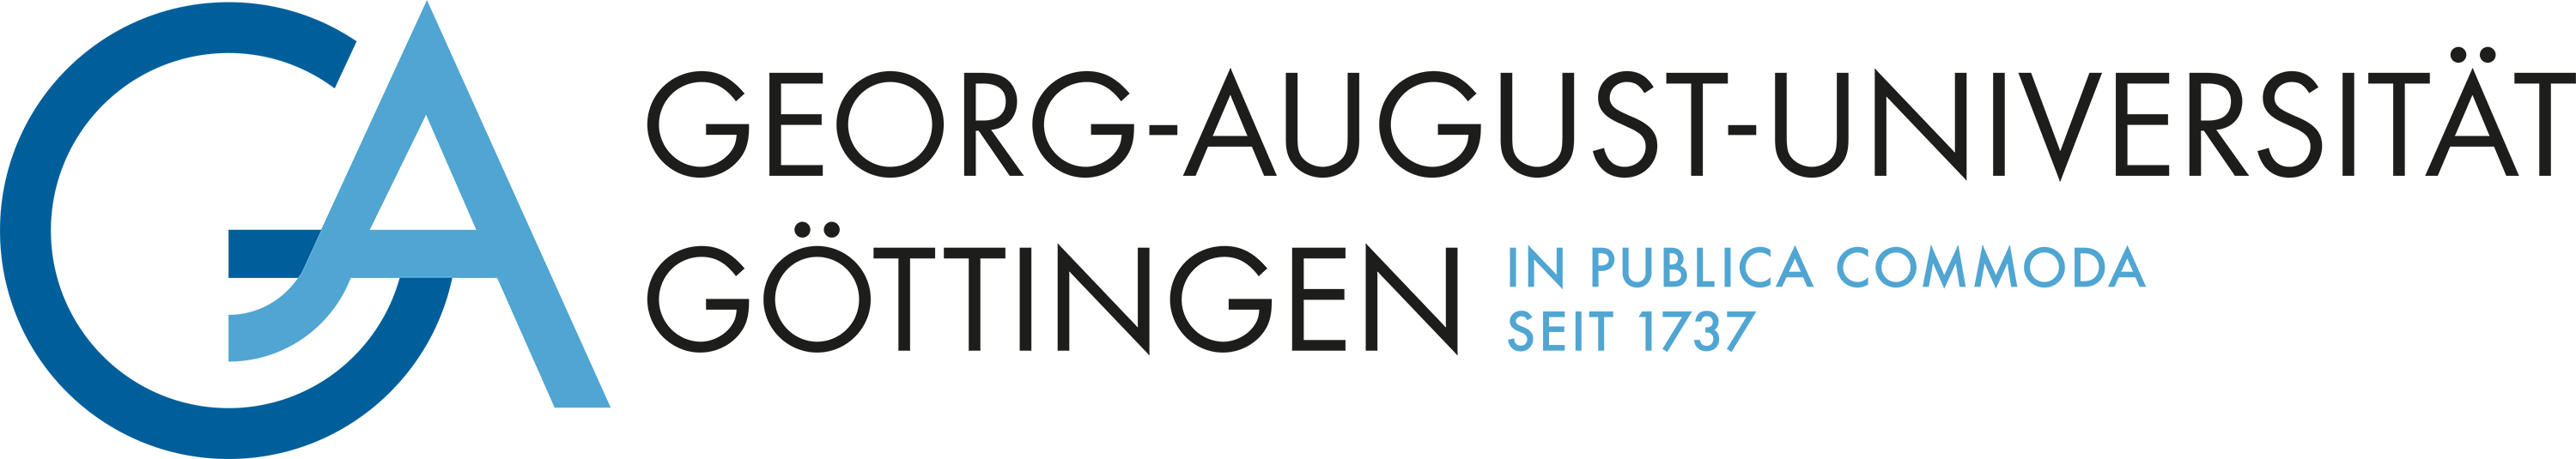 Logo Goettingen neu